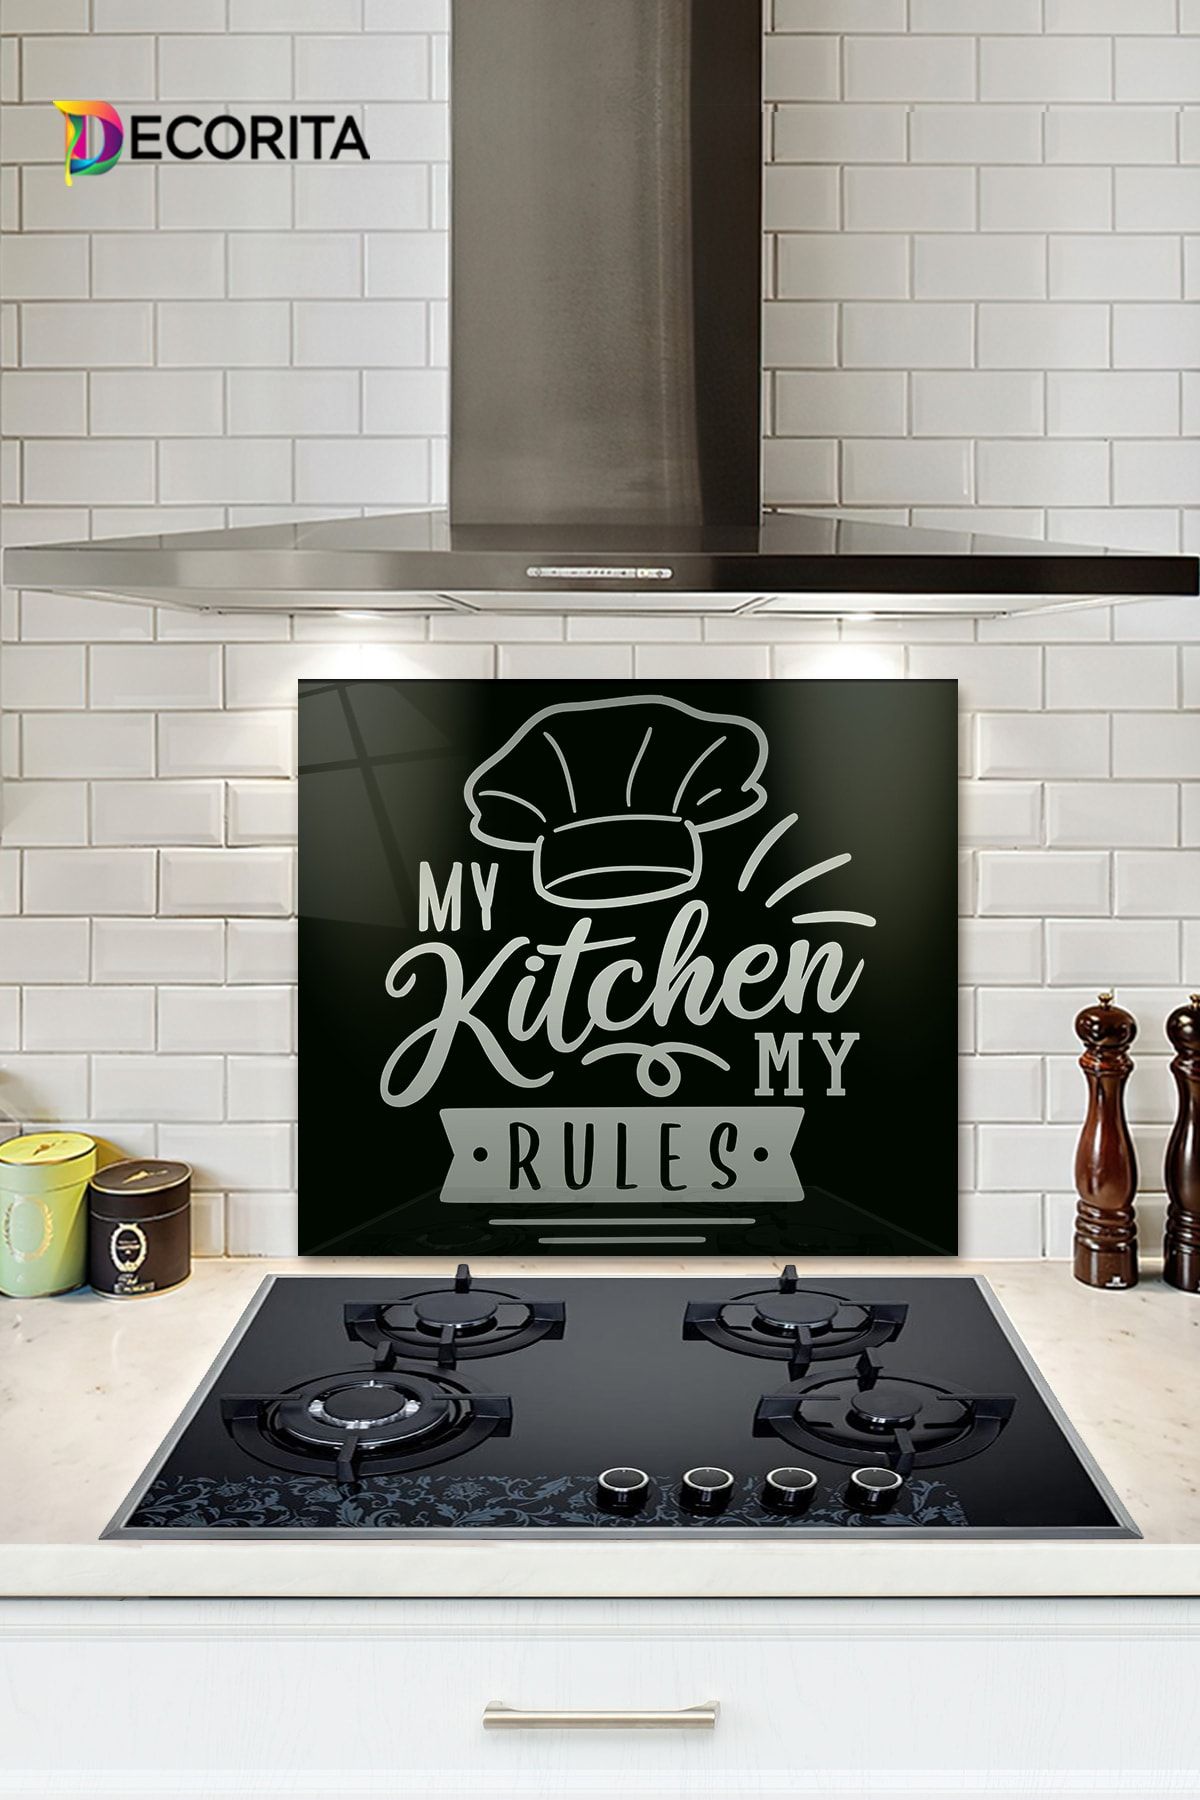 Decorita Cam Ocak Arkası Koruyucu | My Kitchen My Rules | 52cm X 60cm